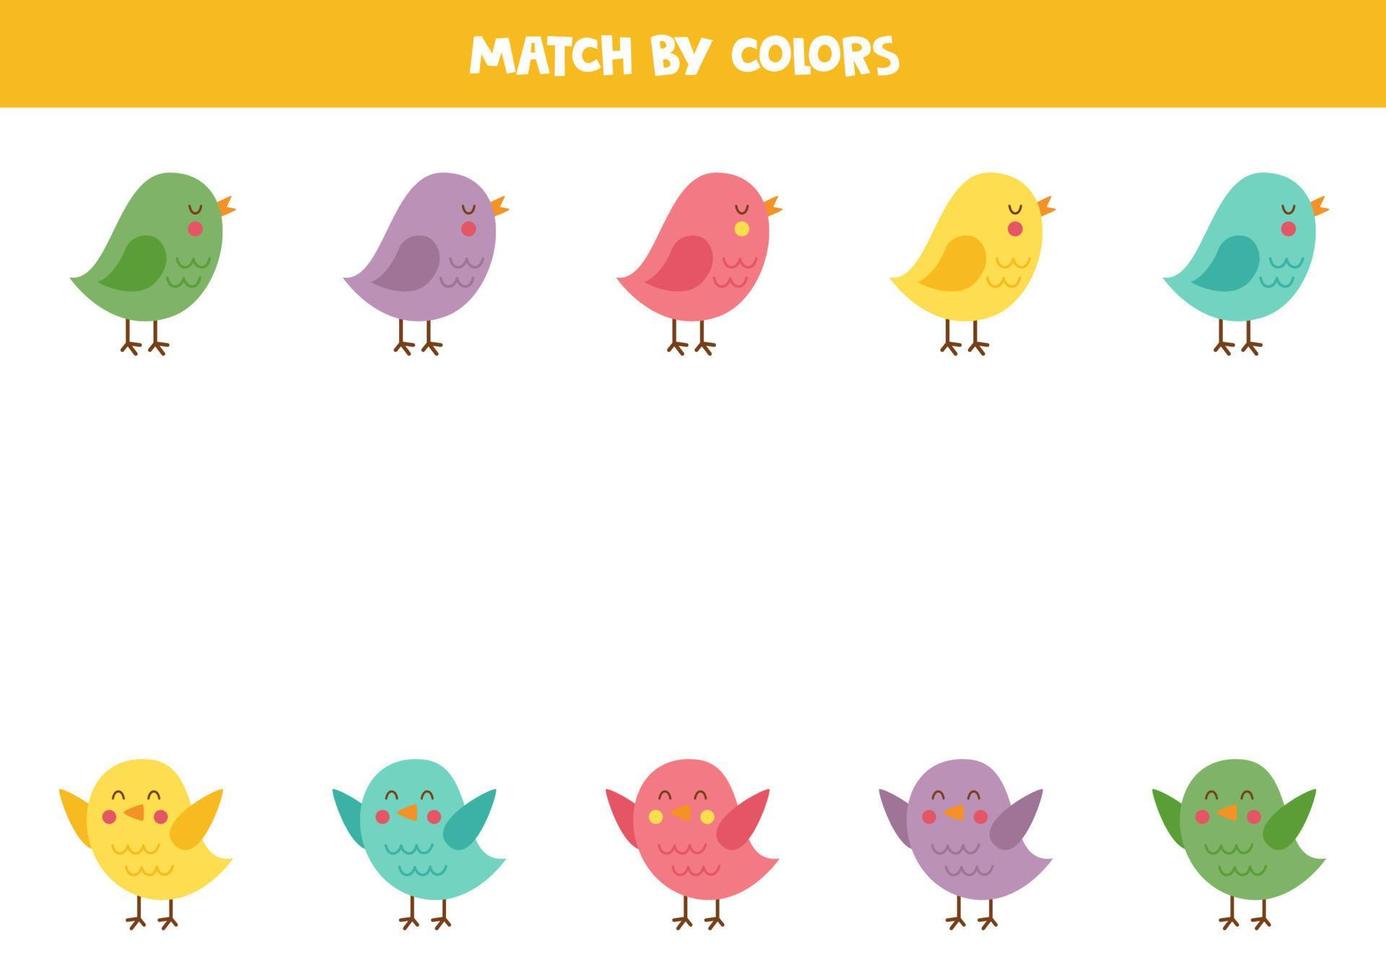 juego de combinación de colores para niños en edad preescolar. unir pájaros por colores. vector